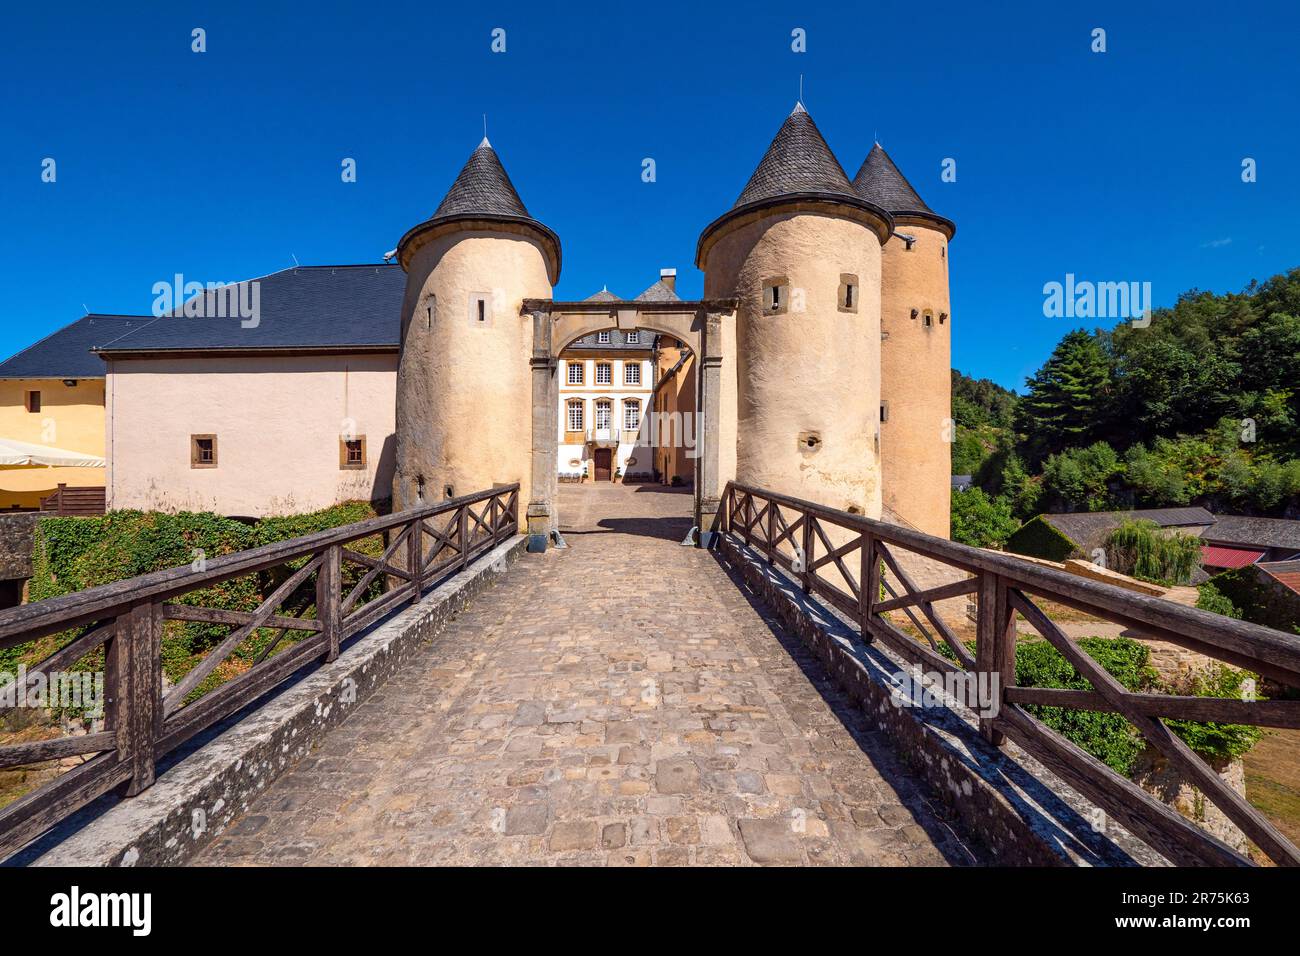 Château de Bourglinger, Junglinger, Grand-Duché de Luxembourg Canton de Grevenmacher, Benelux, pays du Benelux, Luxembourg Banque D'Images